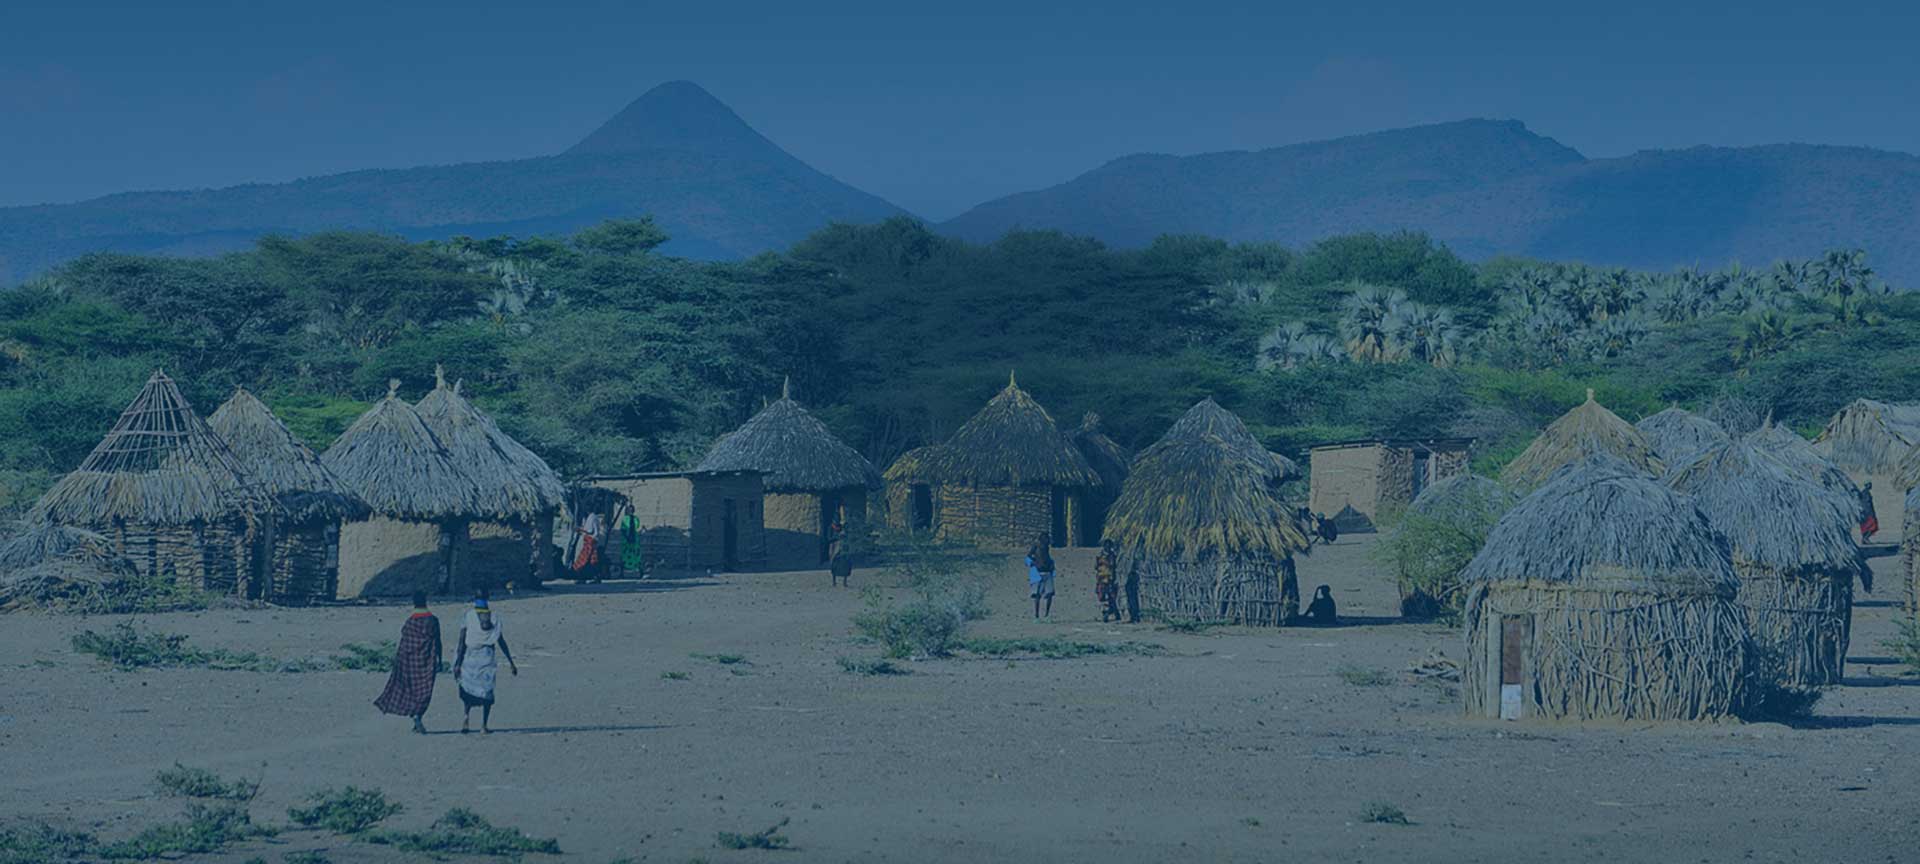 Landscape and huts in Burundi.